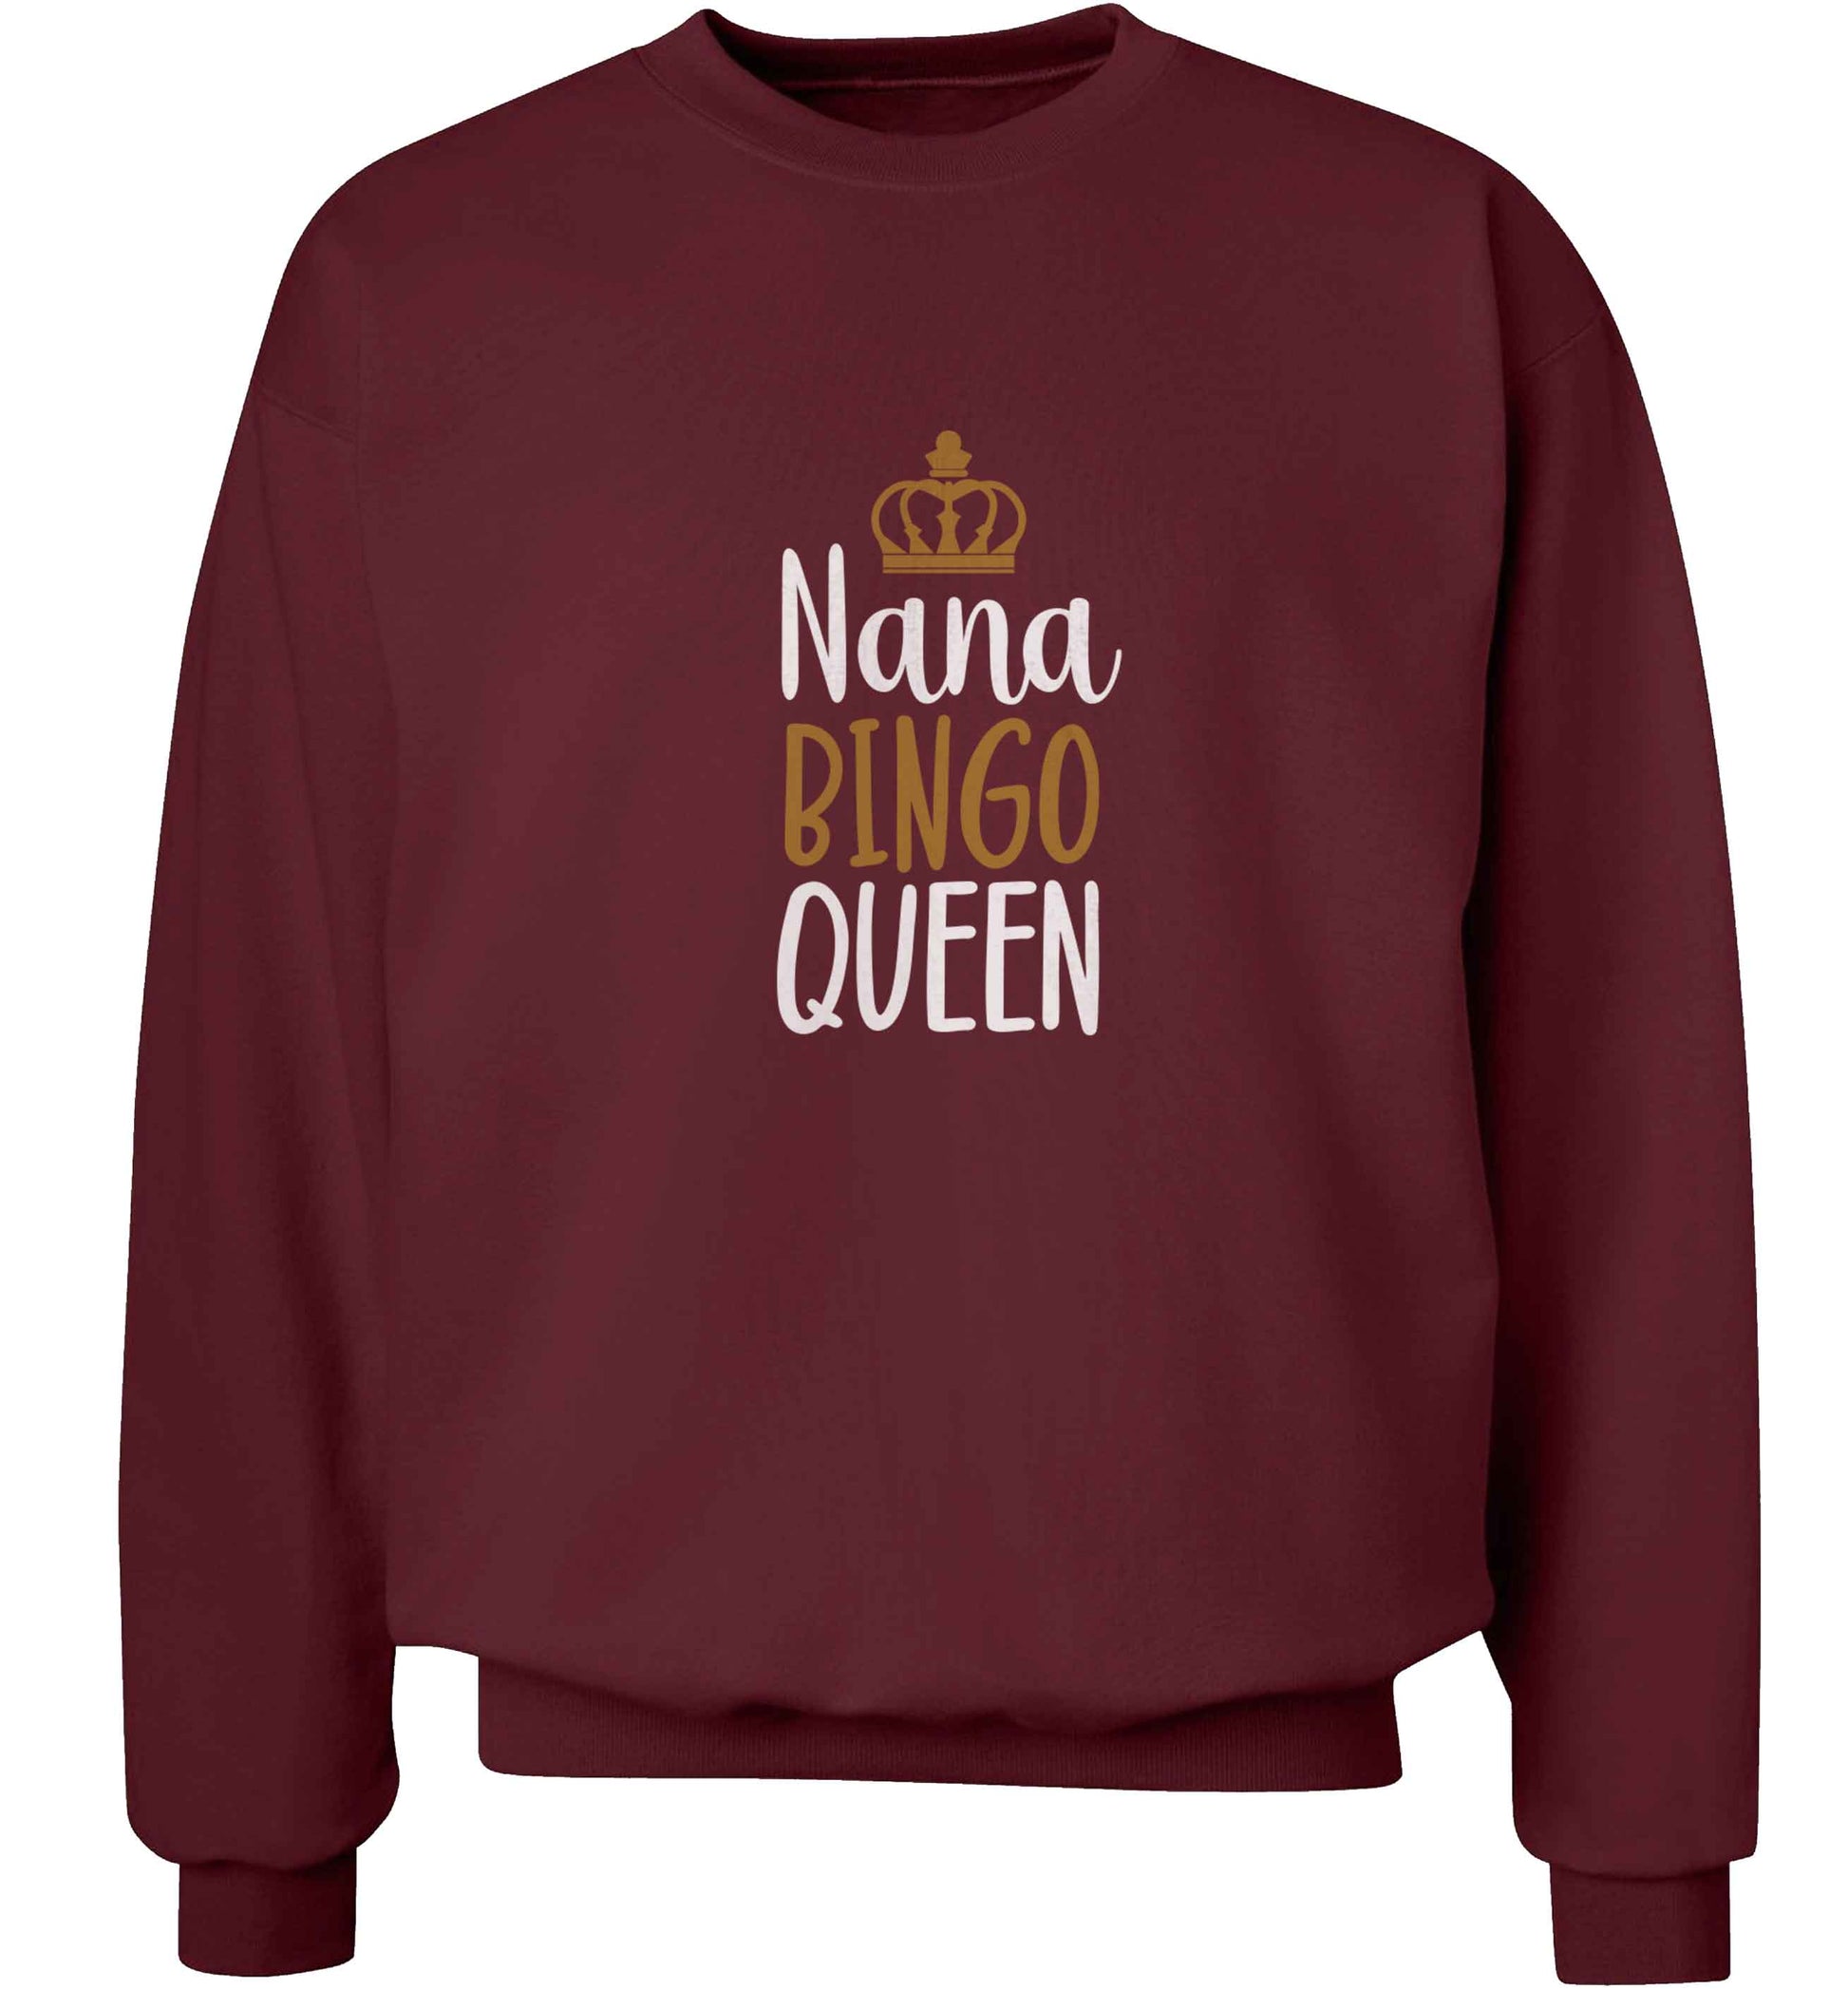 Personalised bingo queen adult's unisex maroon sweater 2XL